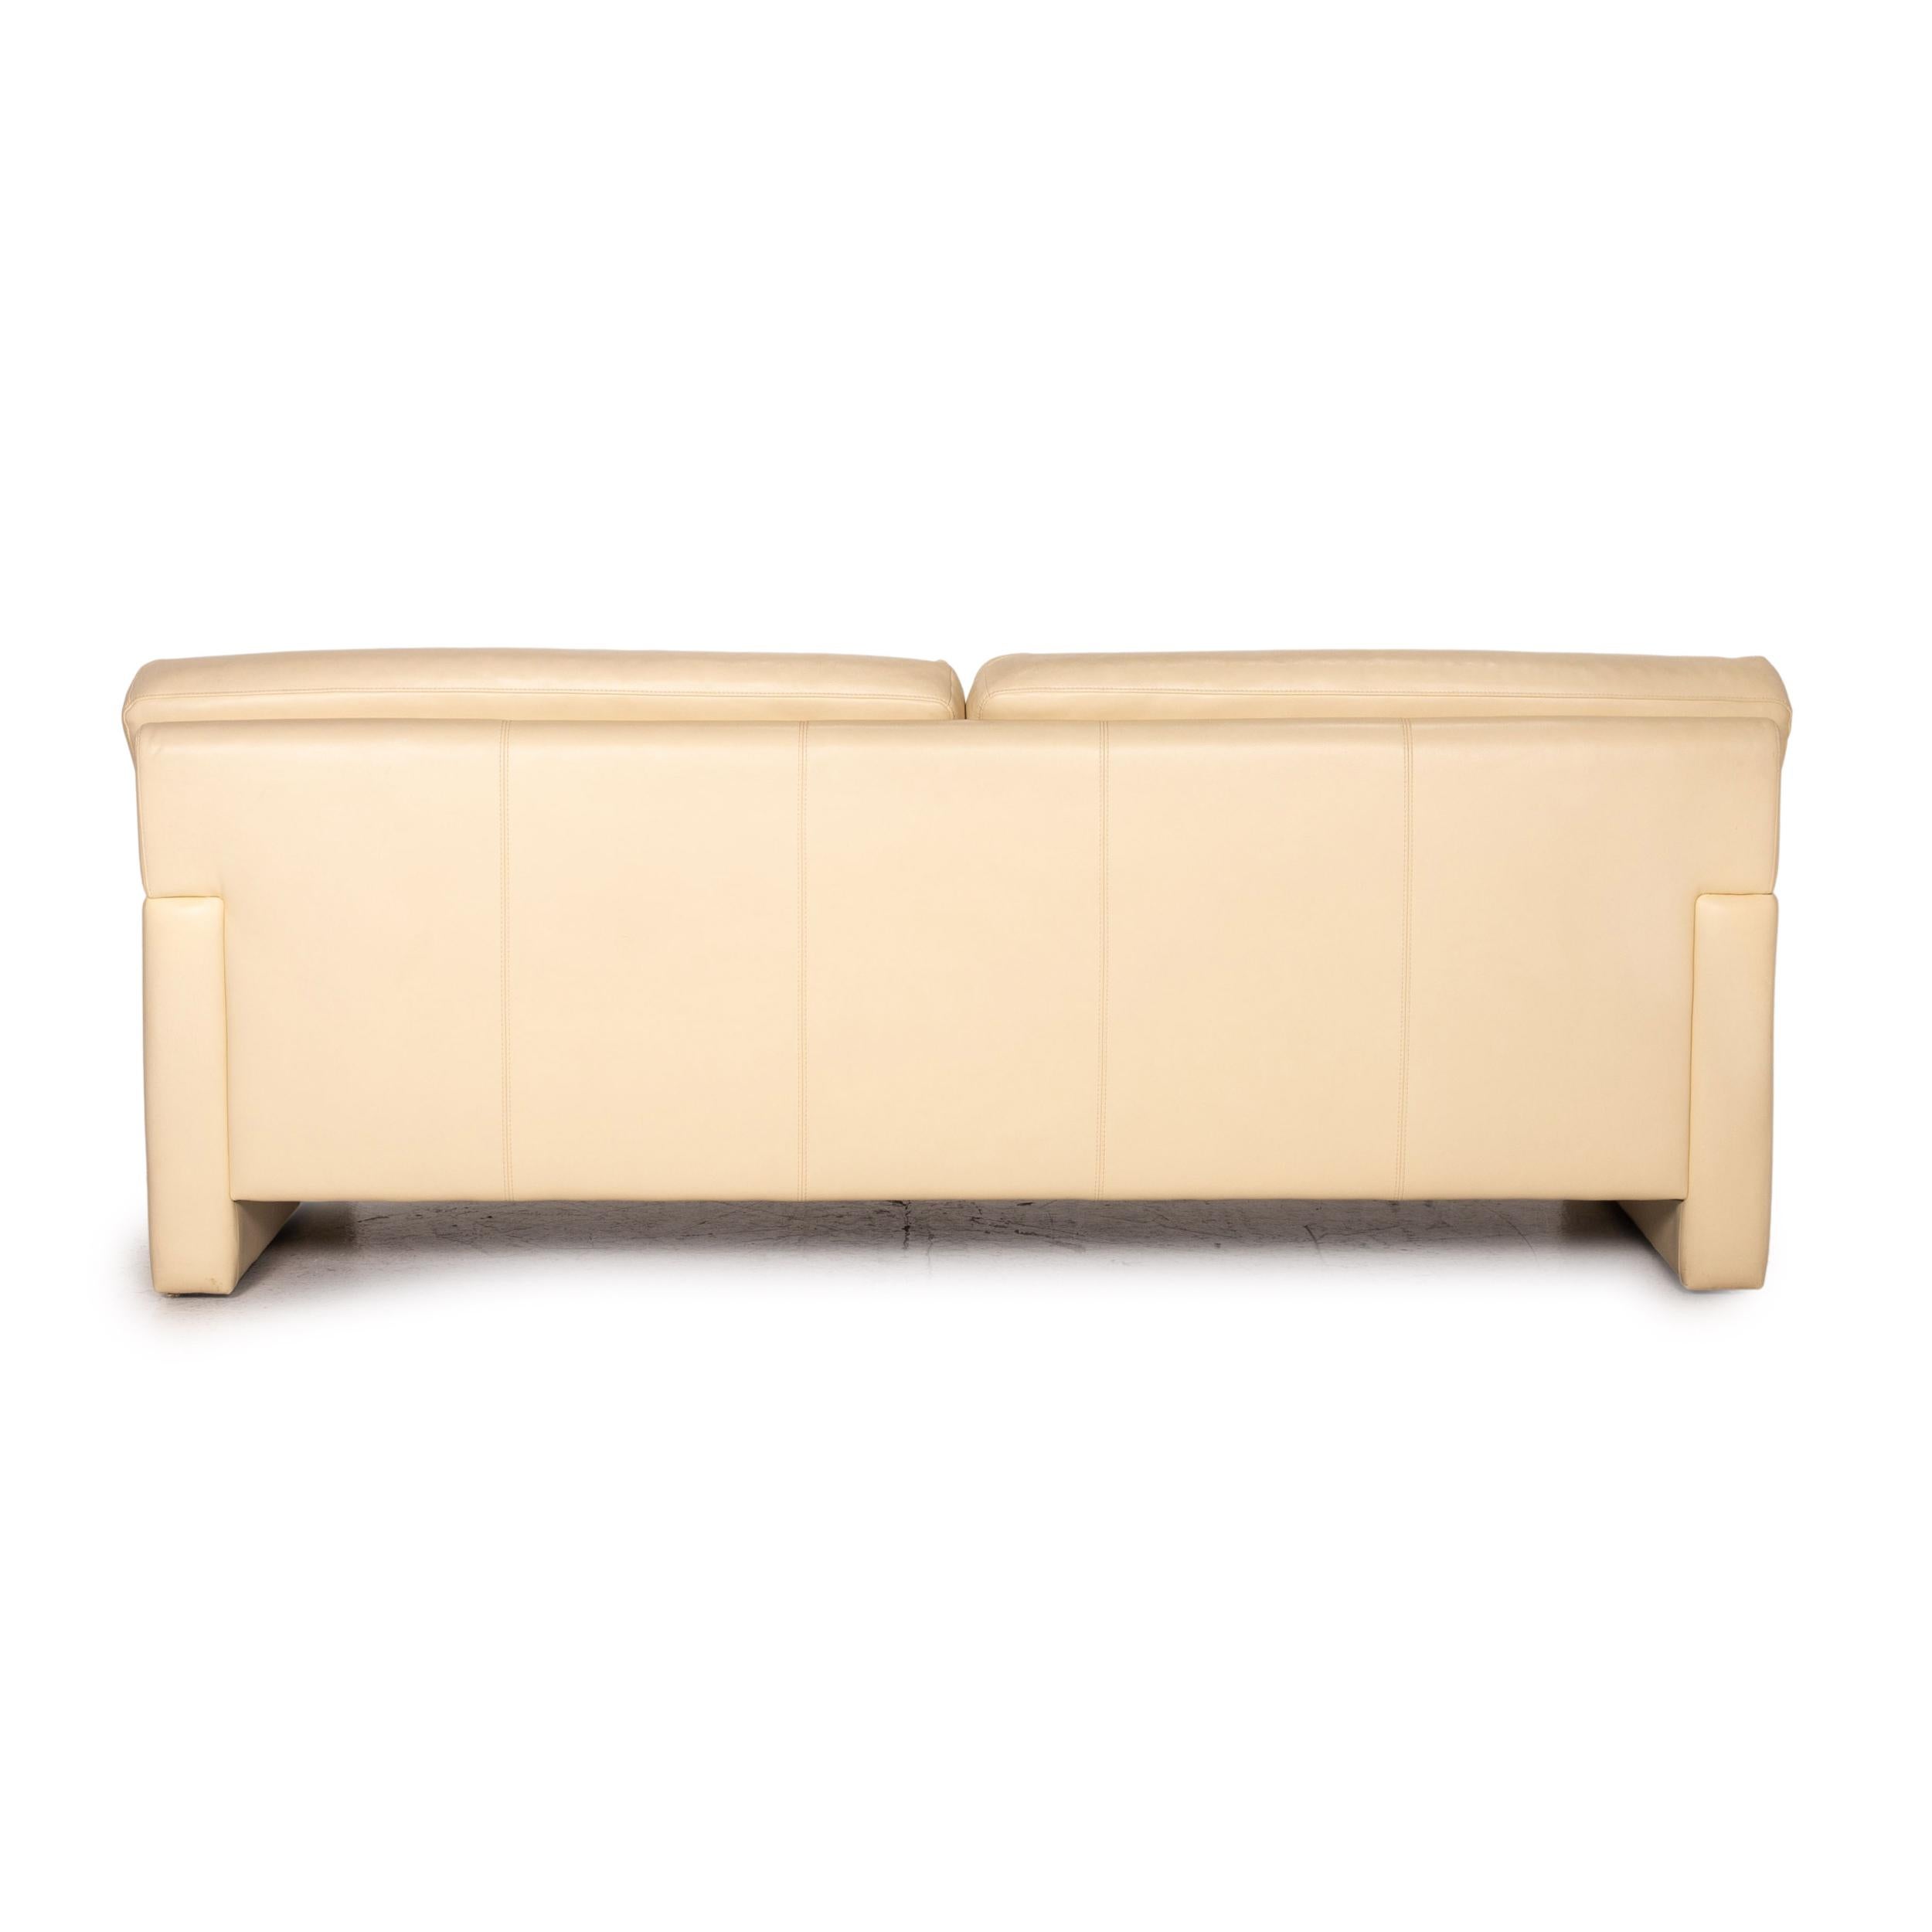 Bielefelder Werkstätten Leather Sofa Cream Three-Seater Couch For Sale 3